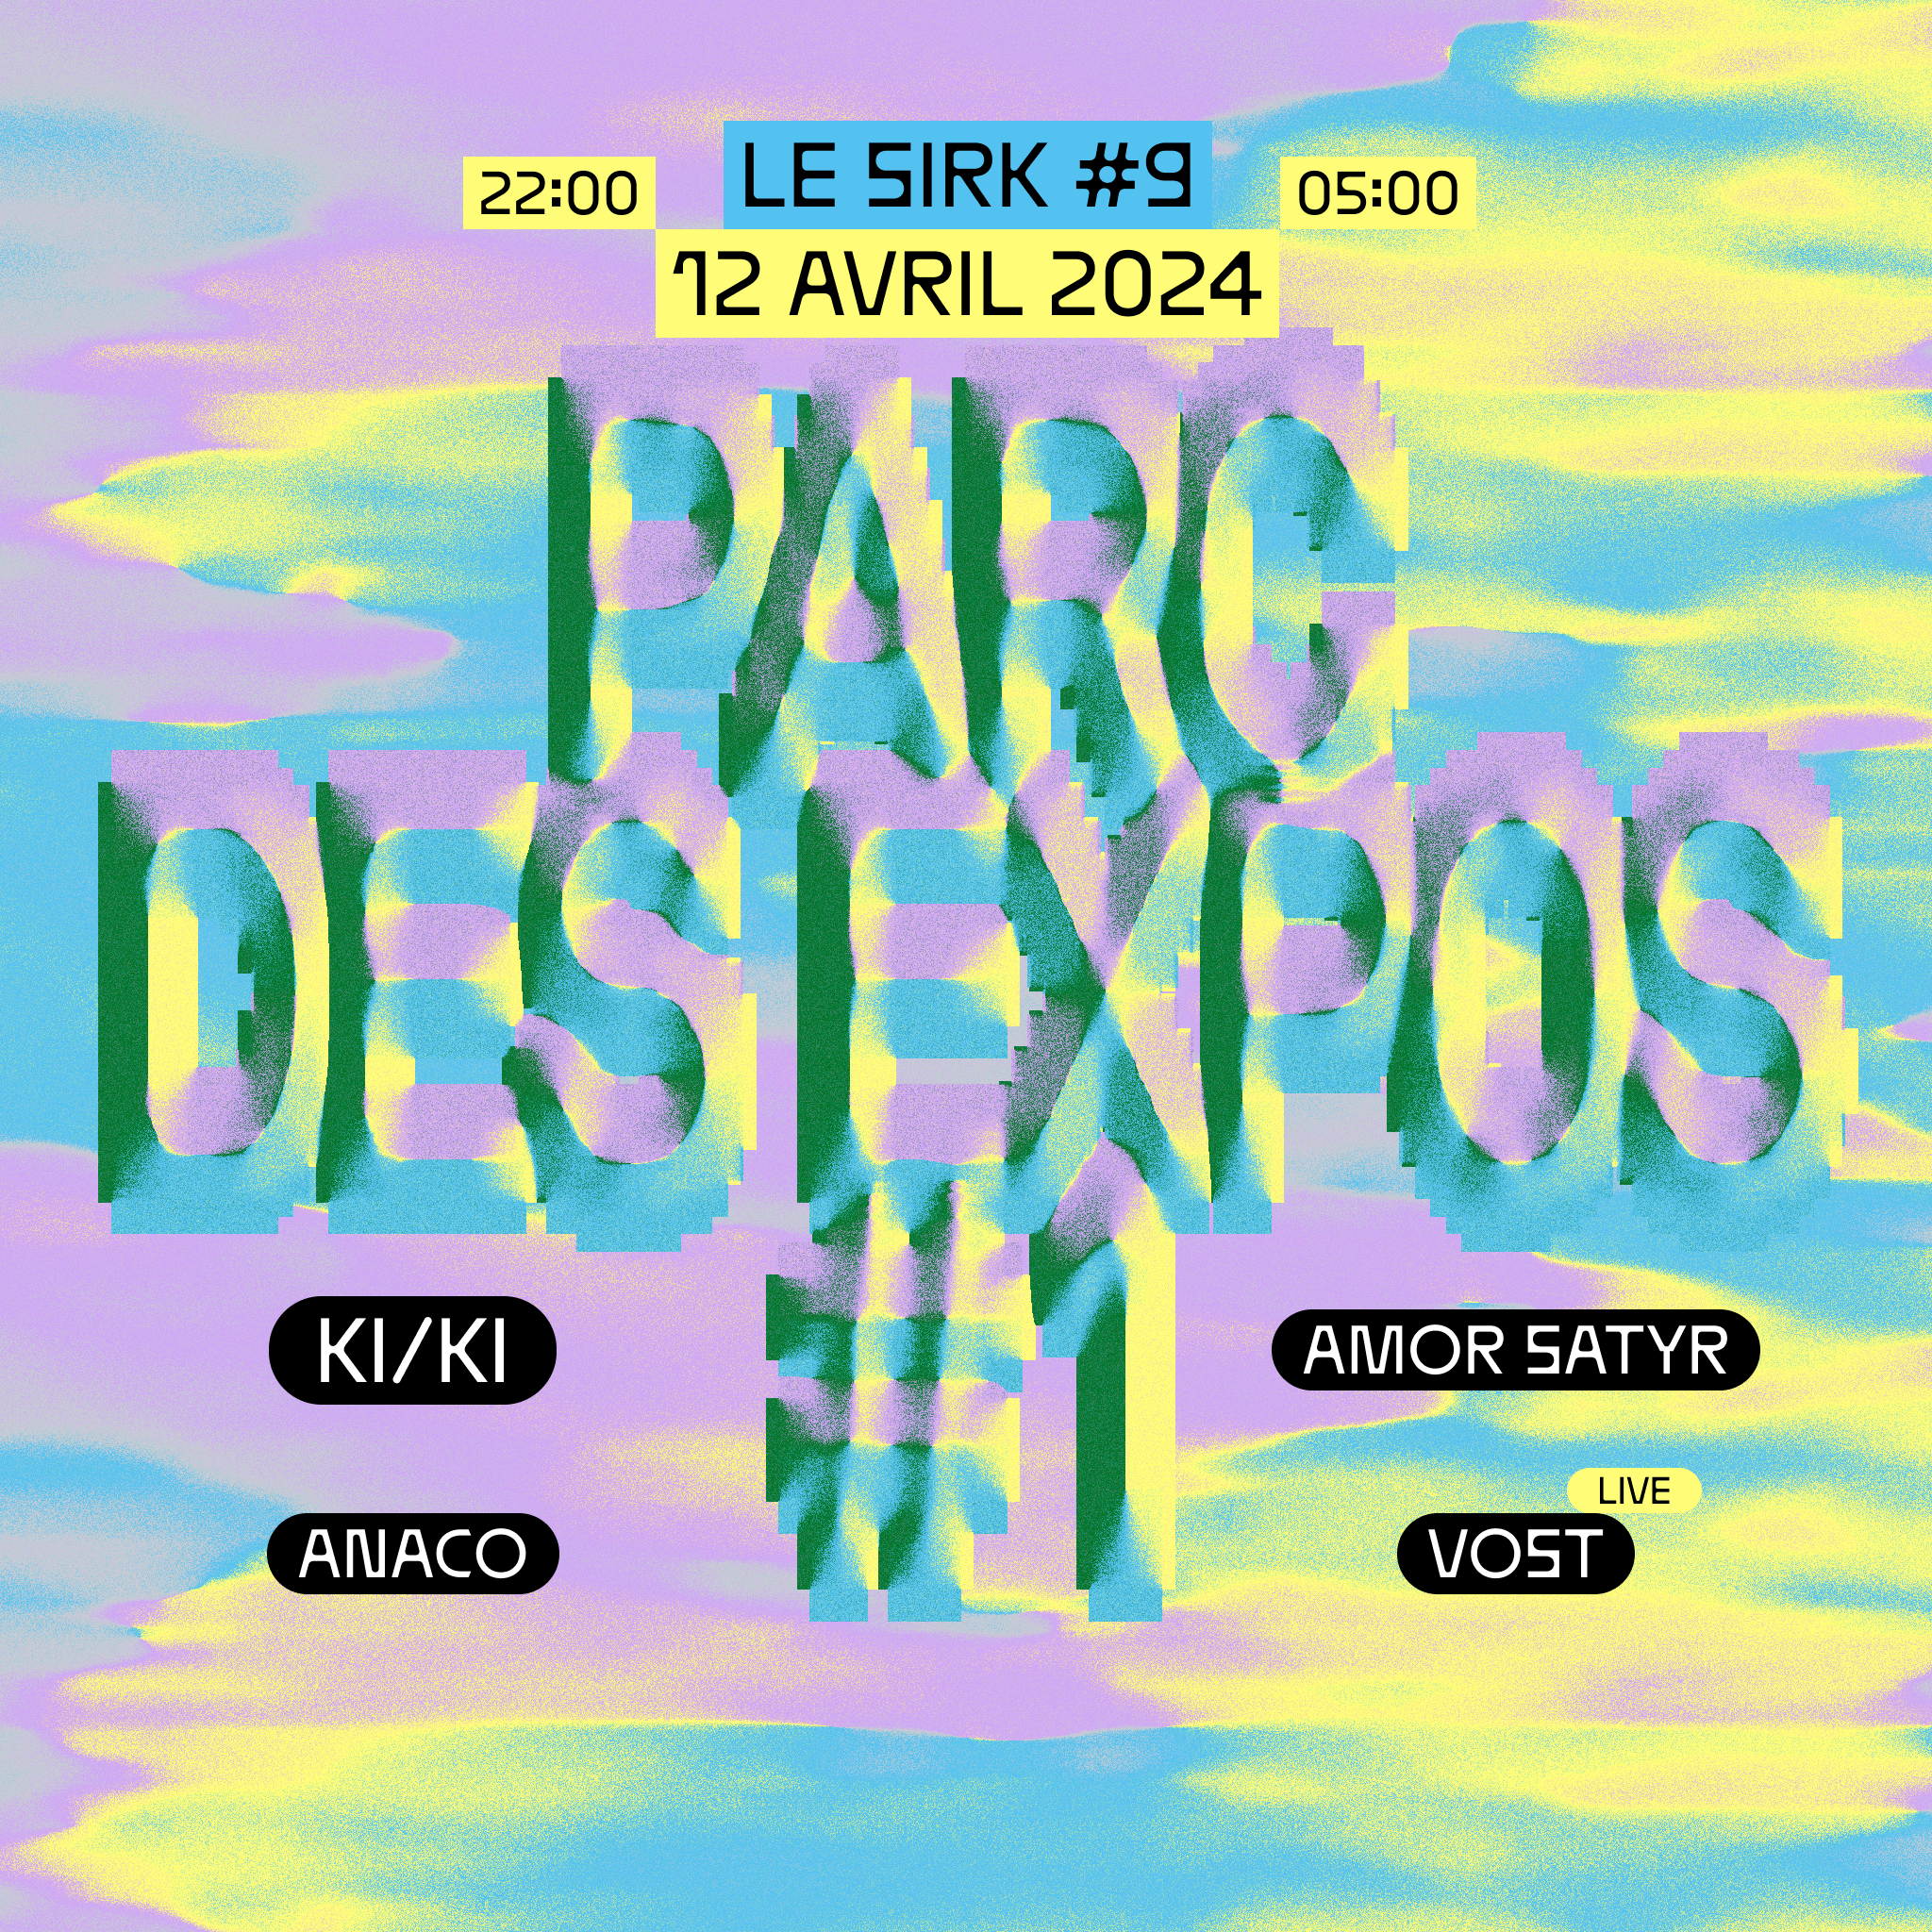 Le SIRK #9 at Parc des Expos #1 - Página frontal